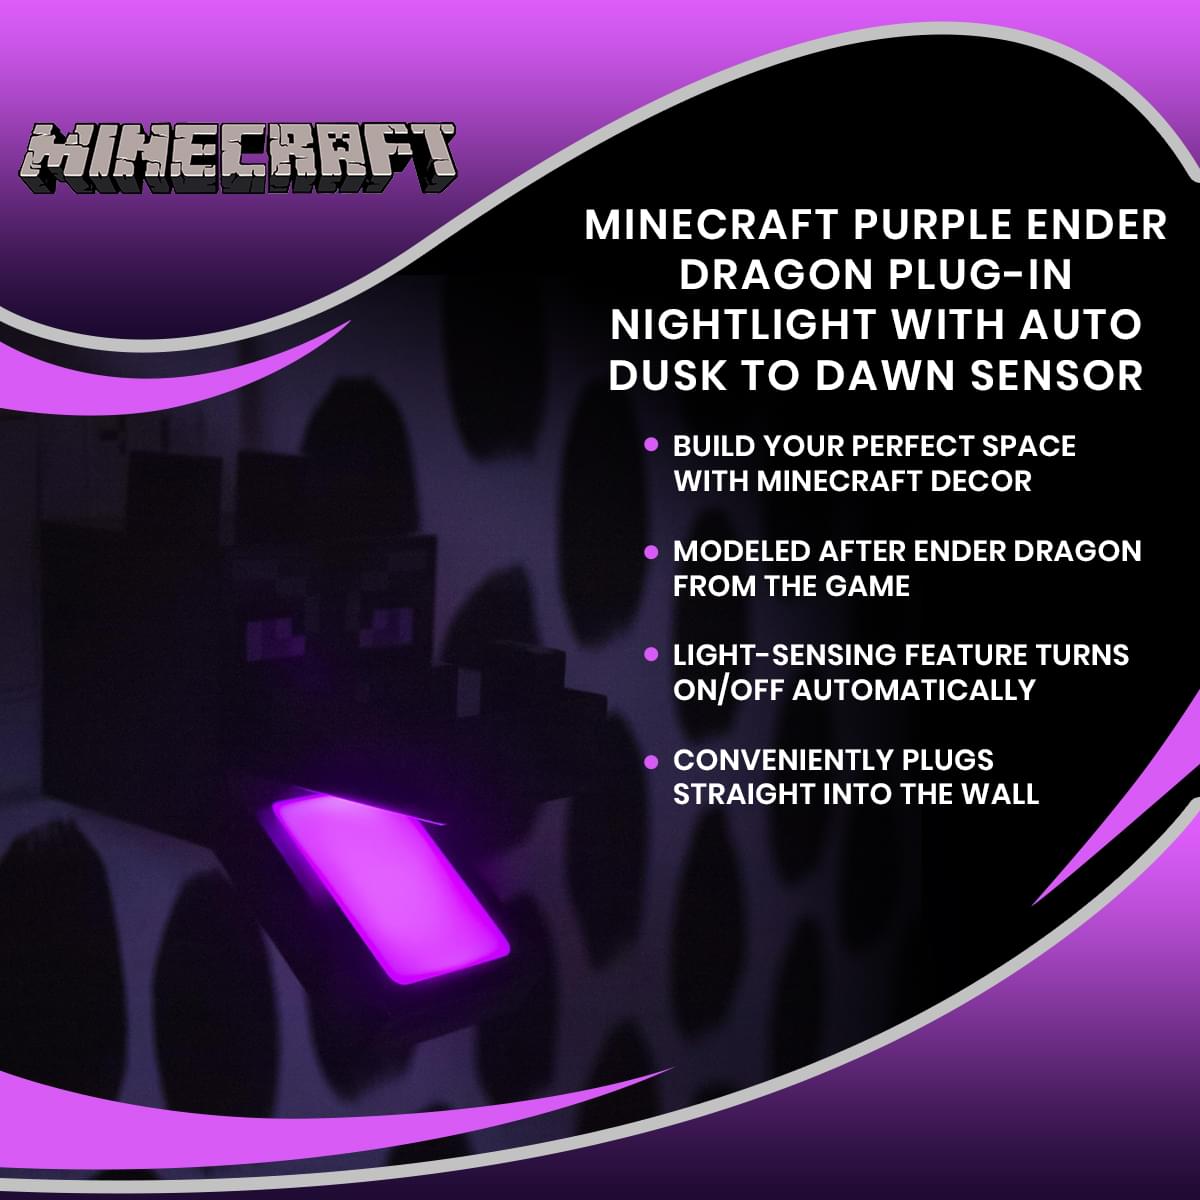 Minecraft Purple Ender Dragon Plug-In Nightlight with Auto Dusk to Dawn Sensor